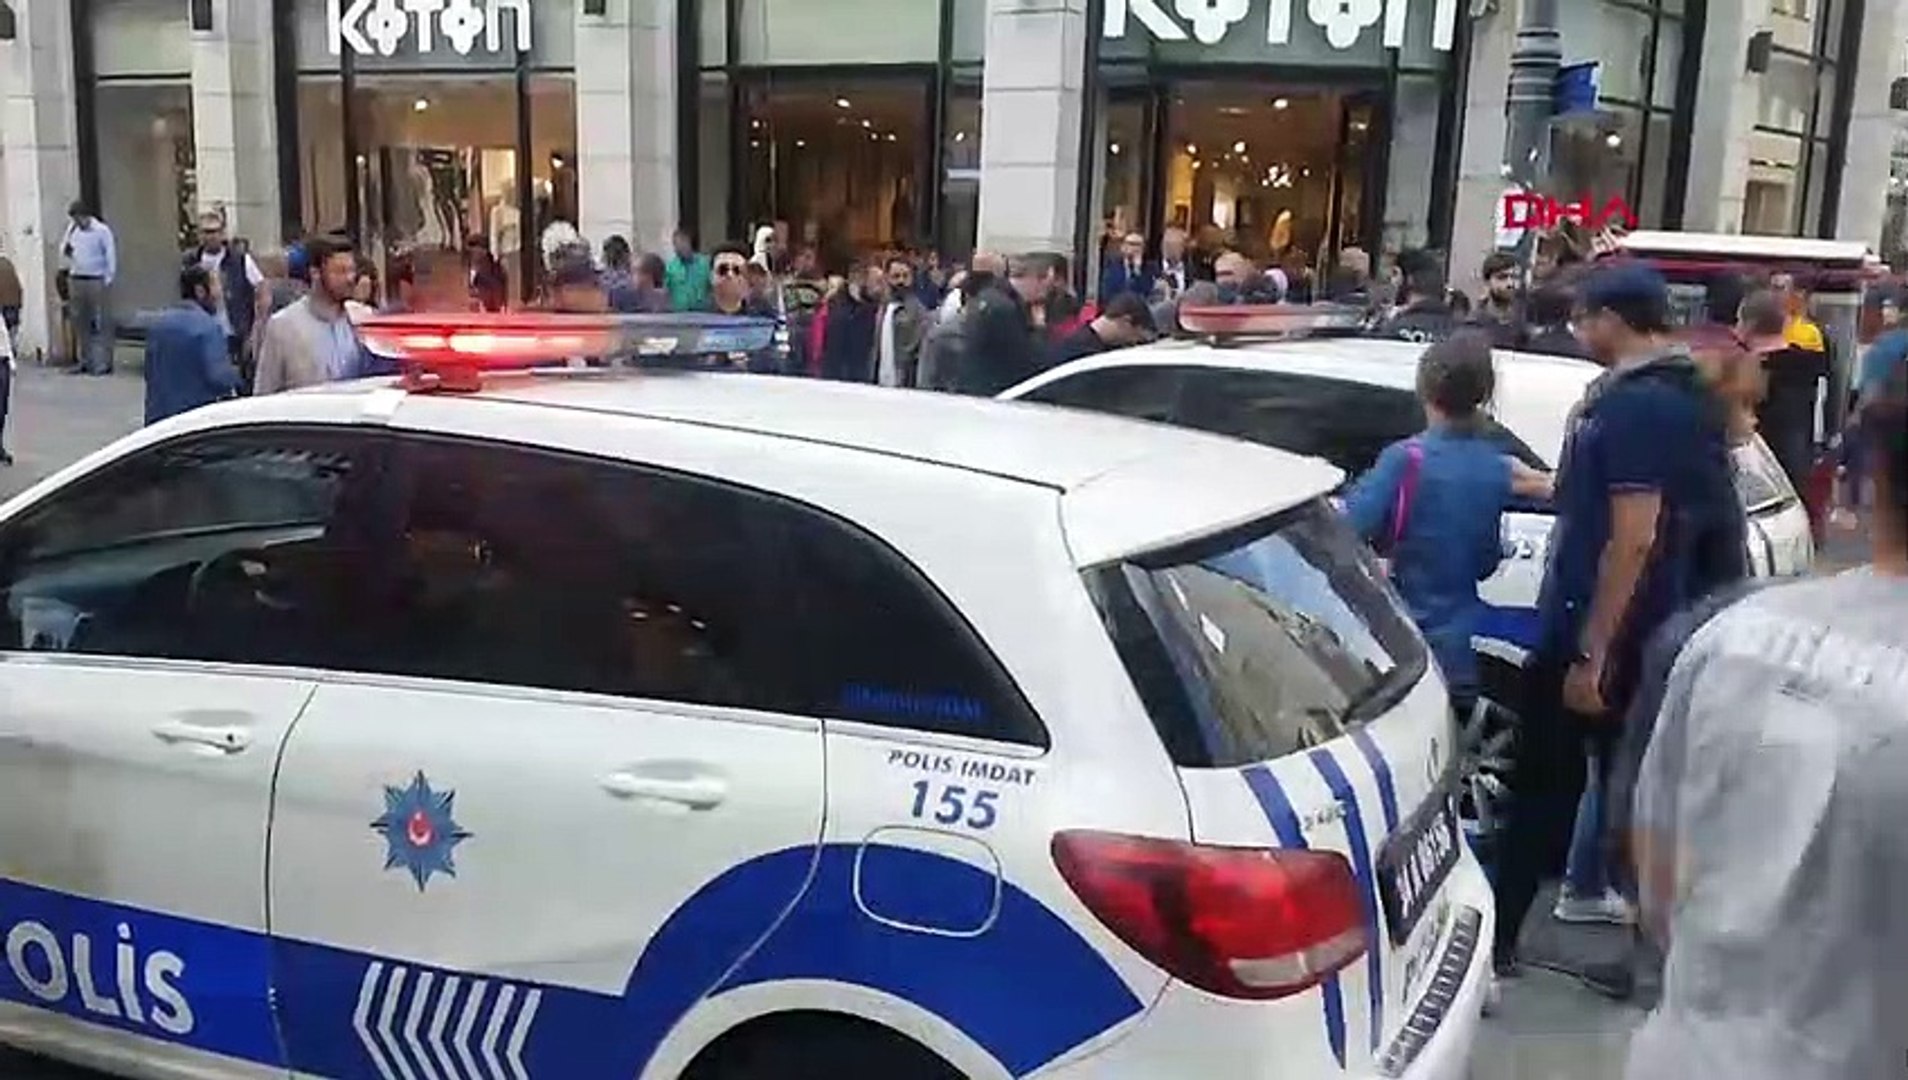 ادعاء كاذب يتسبب في استنفار الأجهزة الأمنية وسط إسطنبول